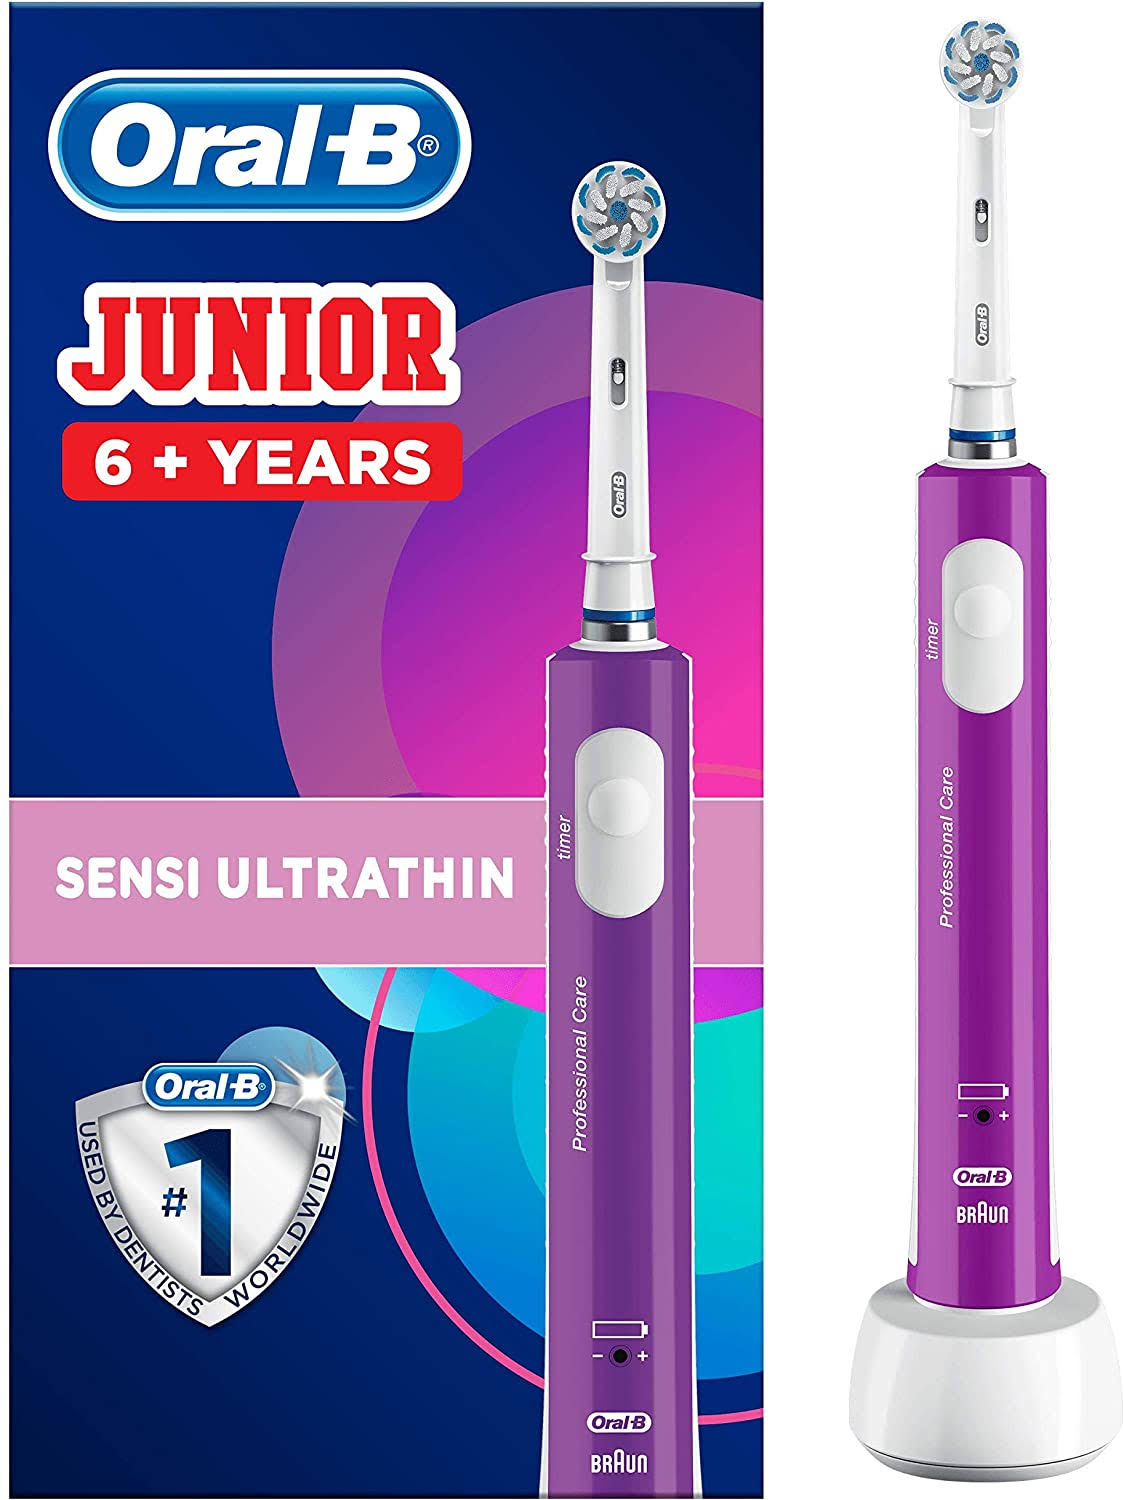 Oral-B Junior Kids Electric Toothbrush Rechargeable for Children Aged 6 - 12, 1 Children’s Electric Toothbrush Rechargeable Handle and 1 Sensitive Too